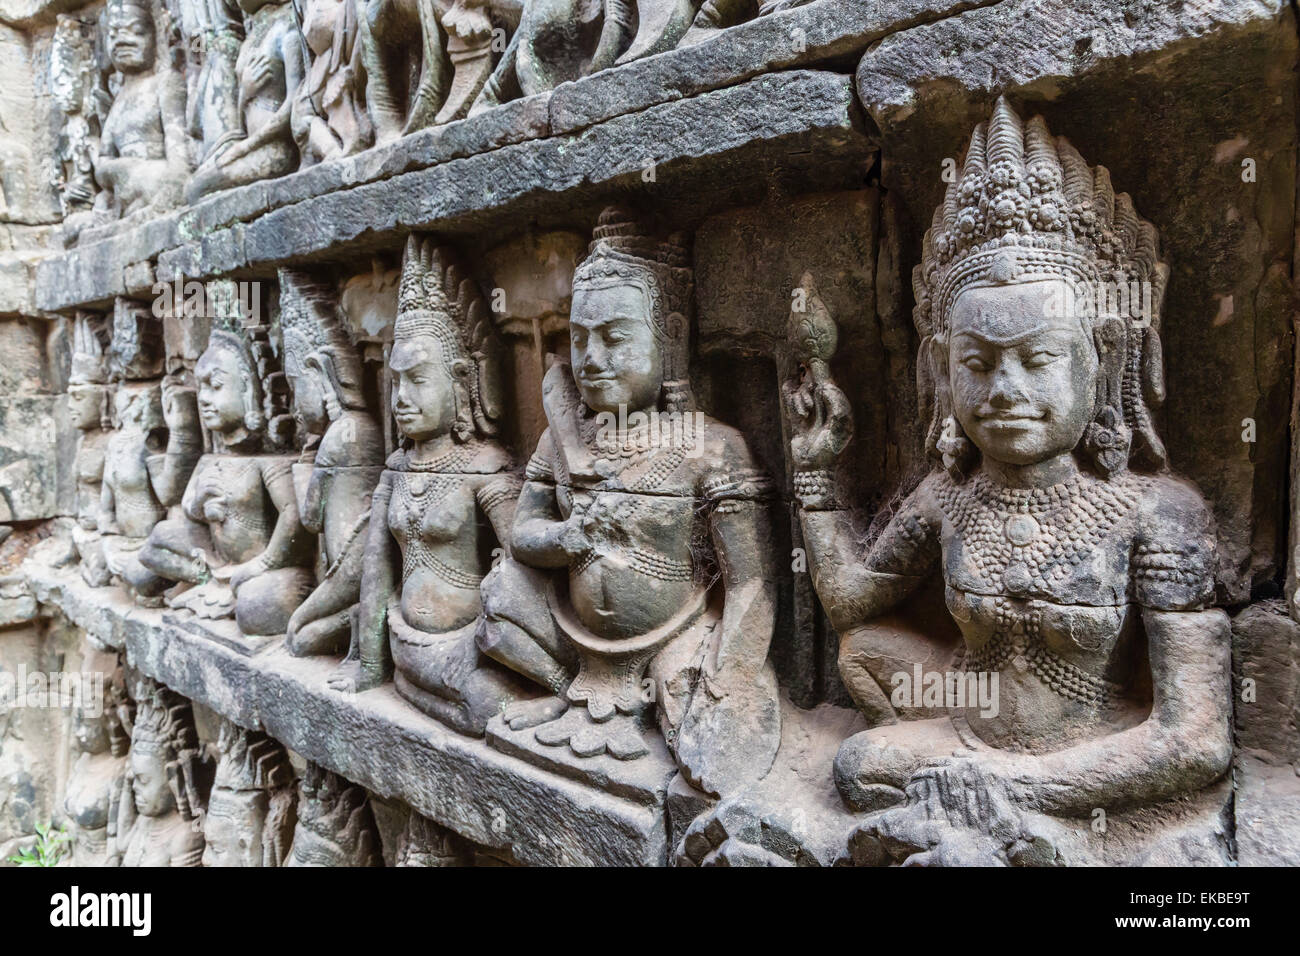 Dans les sculptures de l'Apsara terrasse du Roi Lépreux à Angkor Thom, Angkor, Cambodge, l'UNESCO, l'Indochine, l'Asie du Sud-Est, Asie Banque D'Images